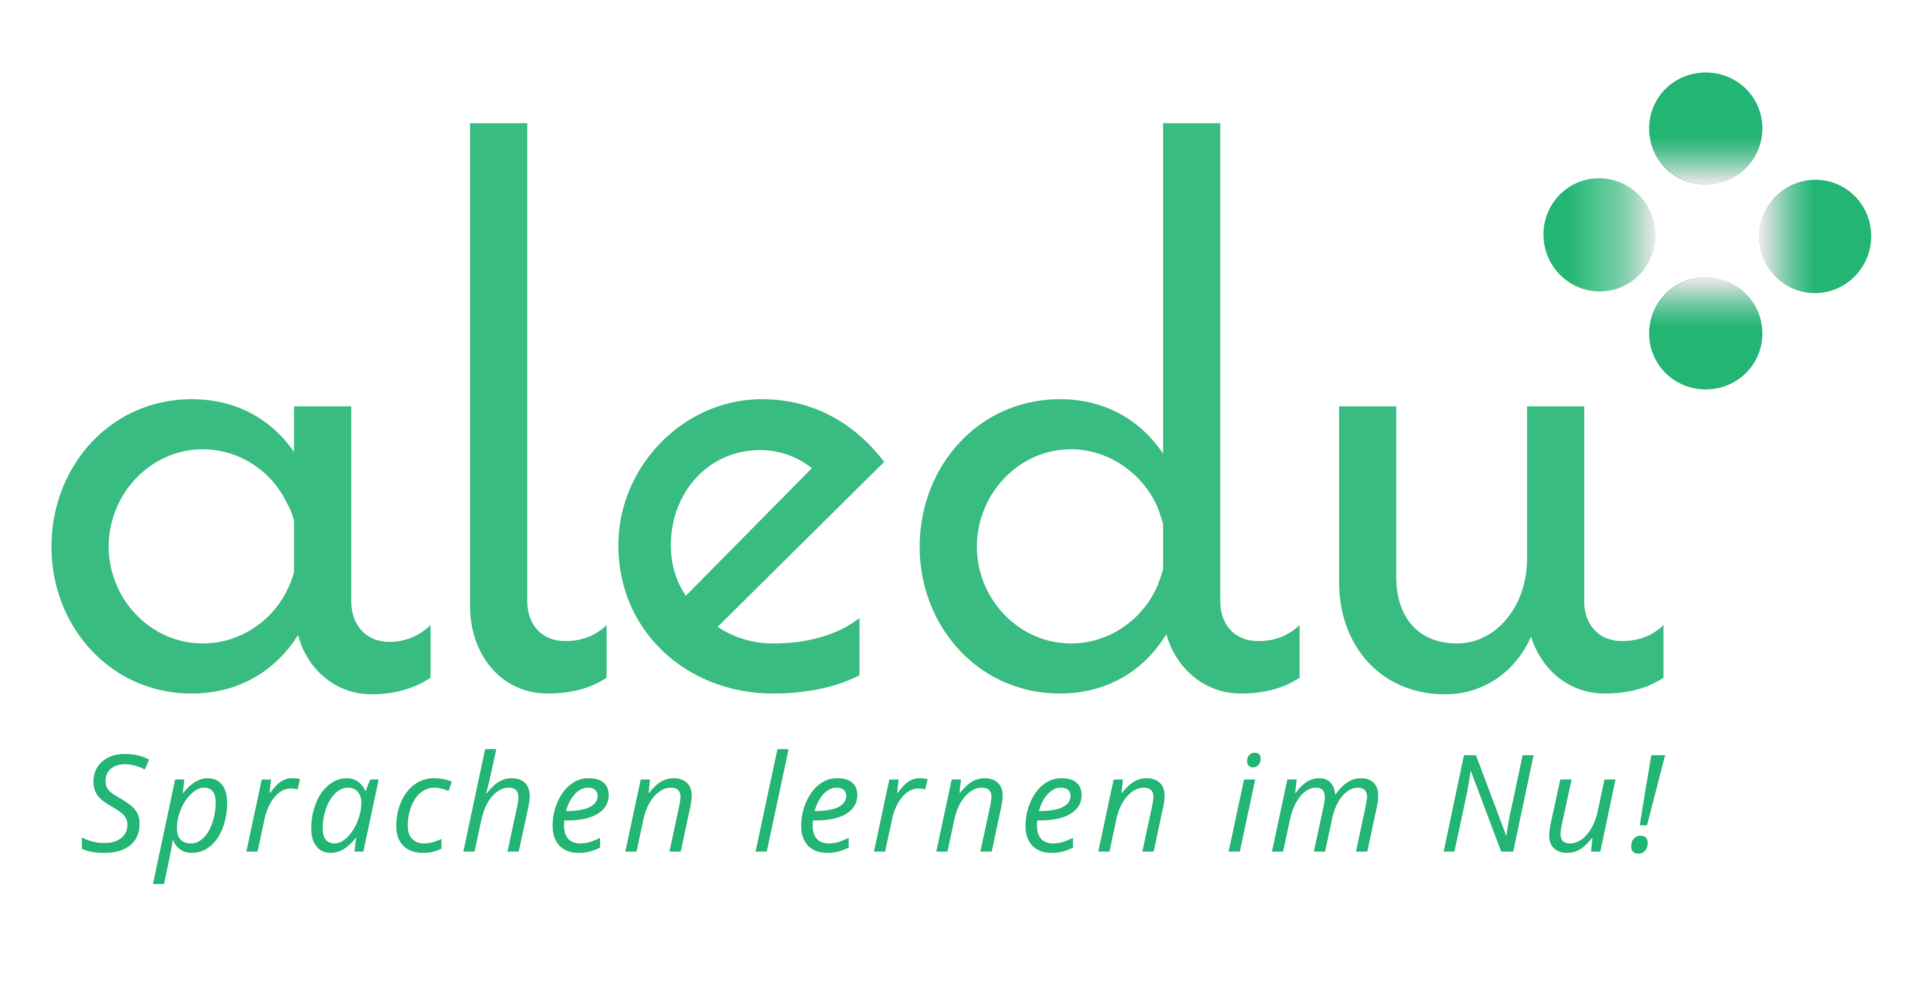 aledu - Educational institution